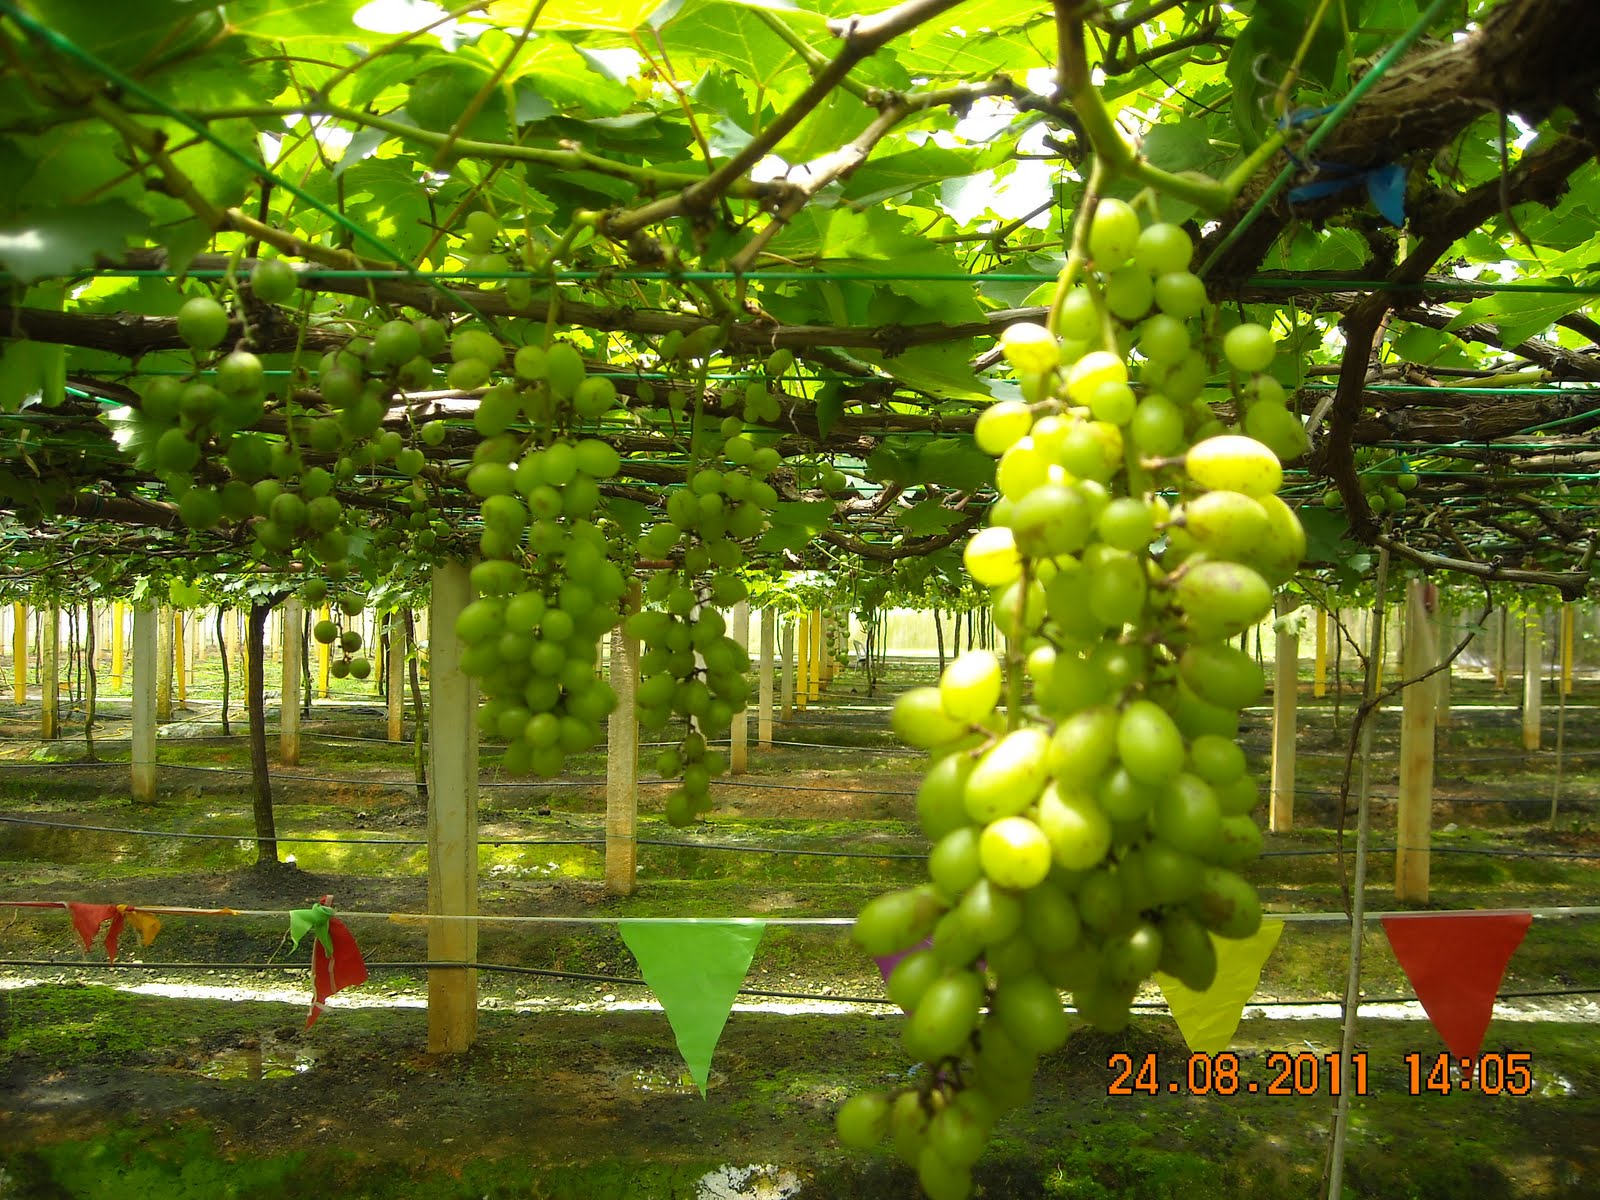 Mini Fruit Farm@PeterTean.com: Grape Farm @ Sik